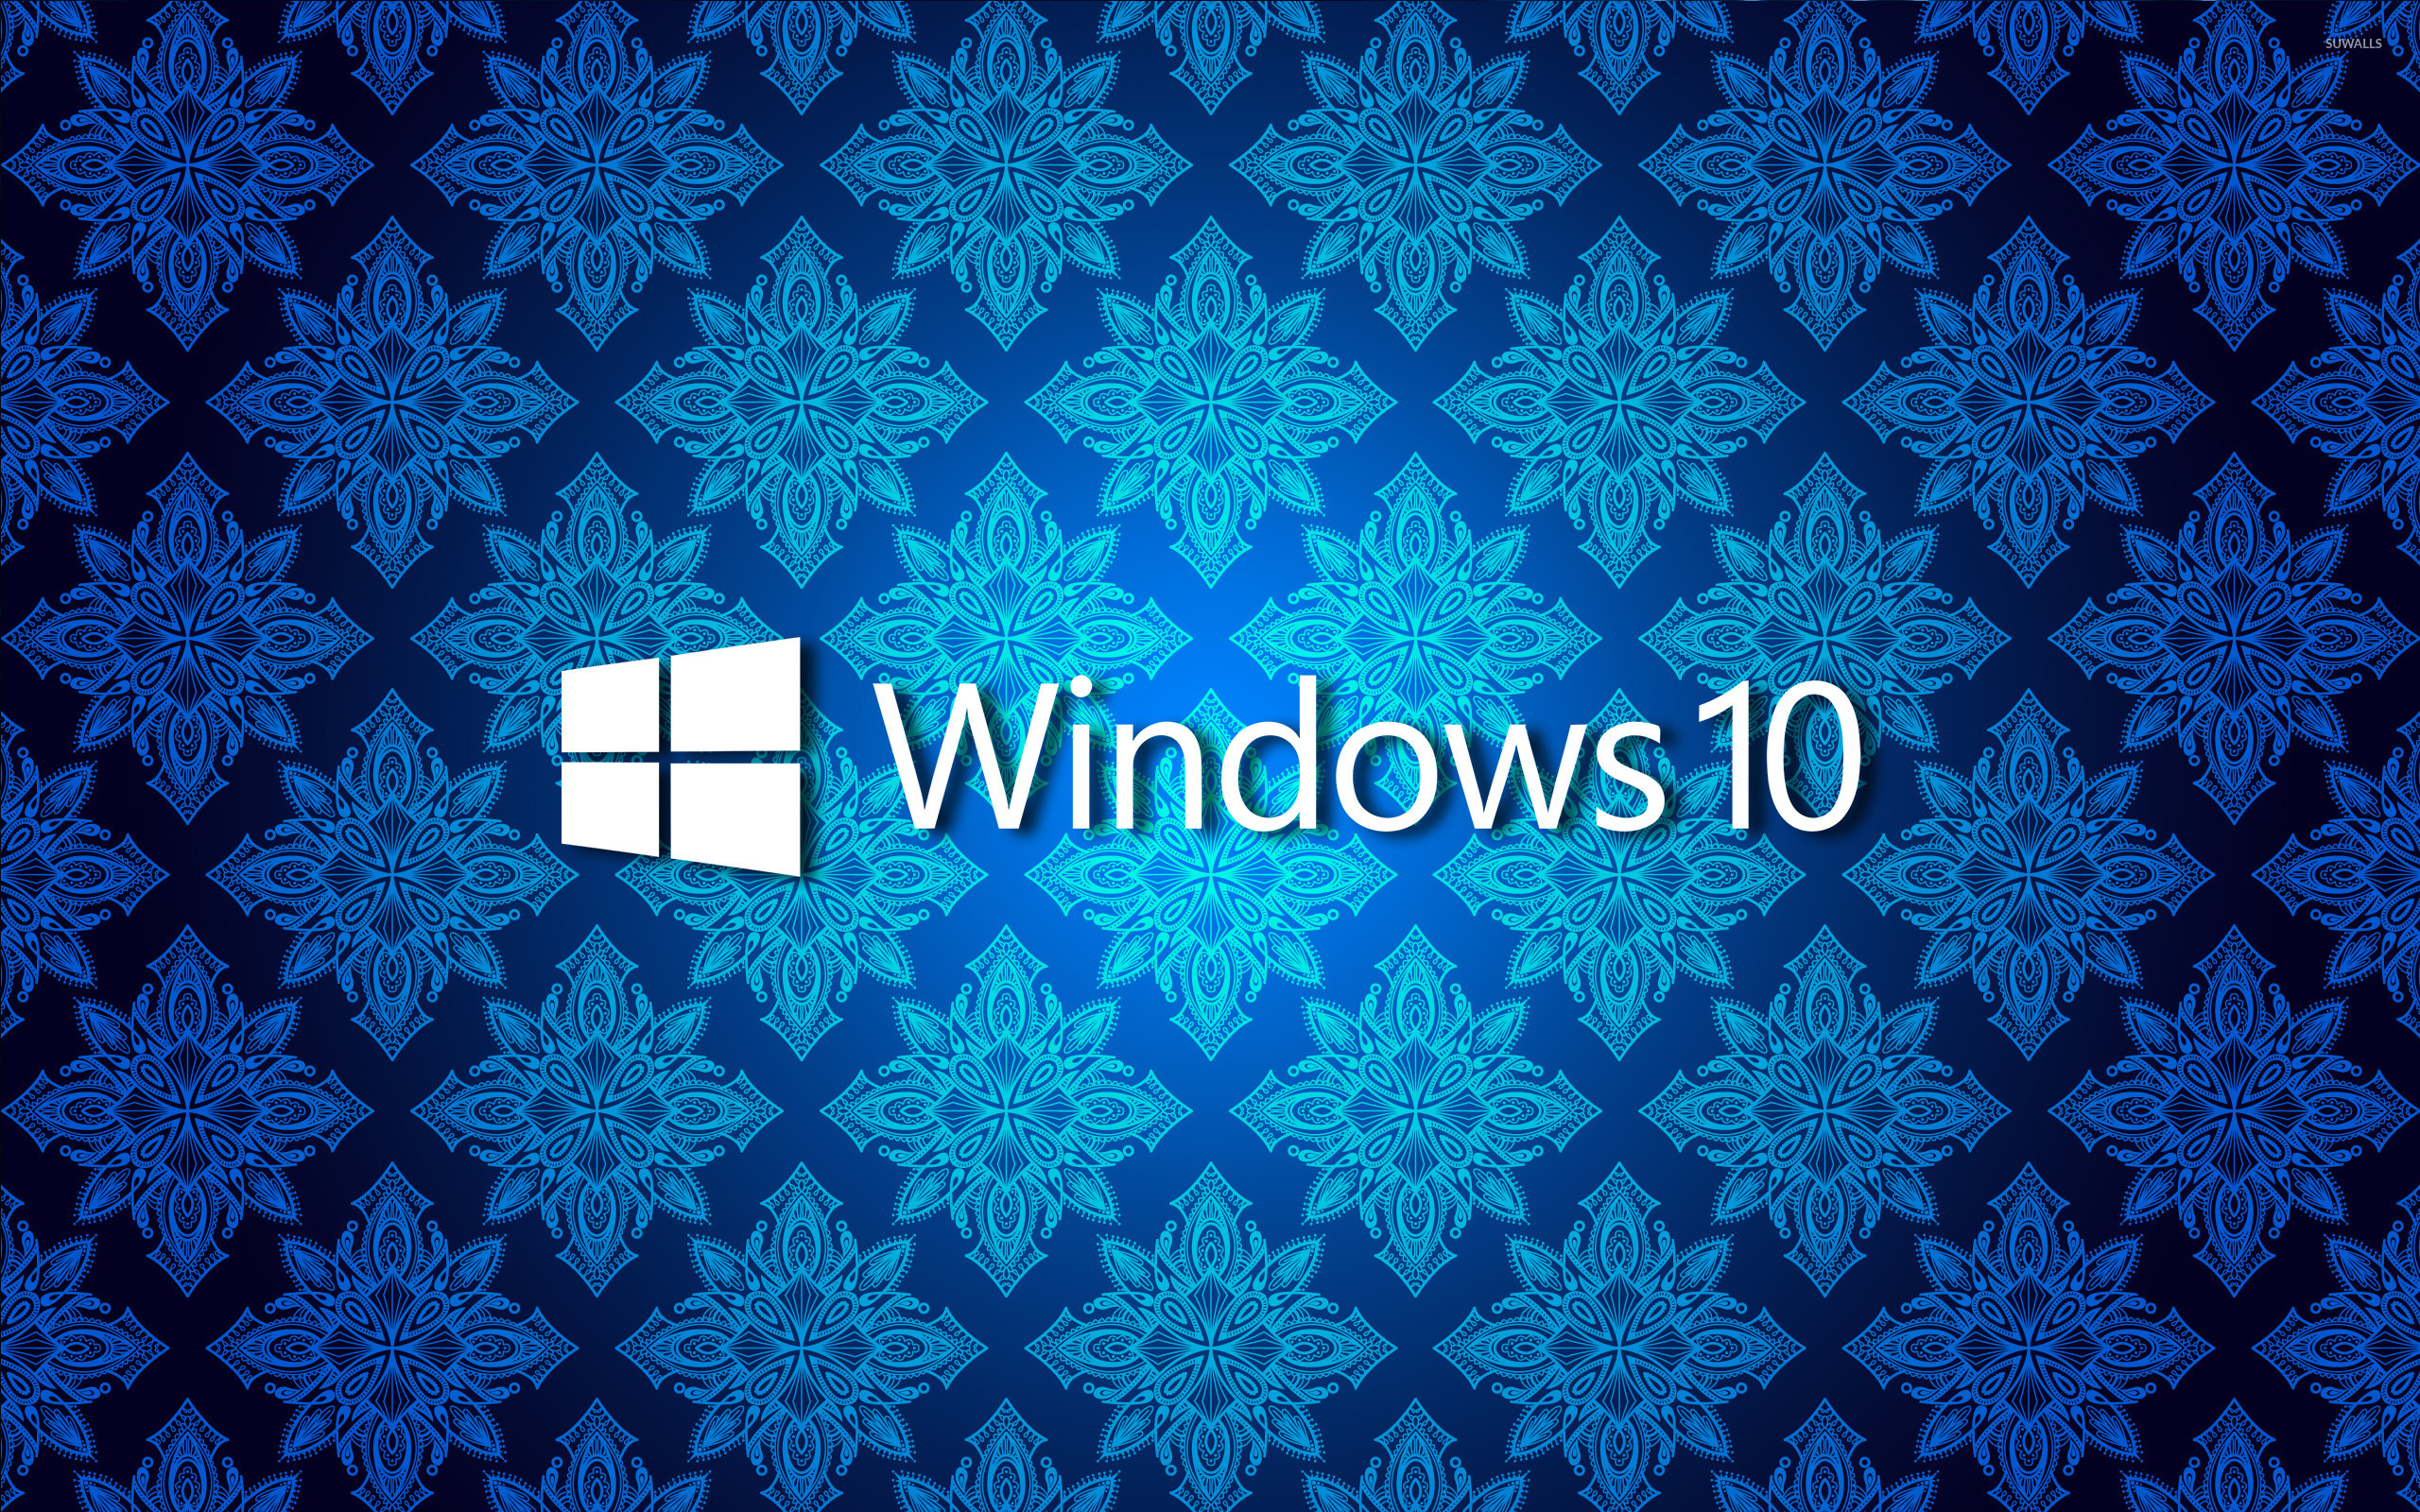 Windows 10 camp